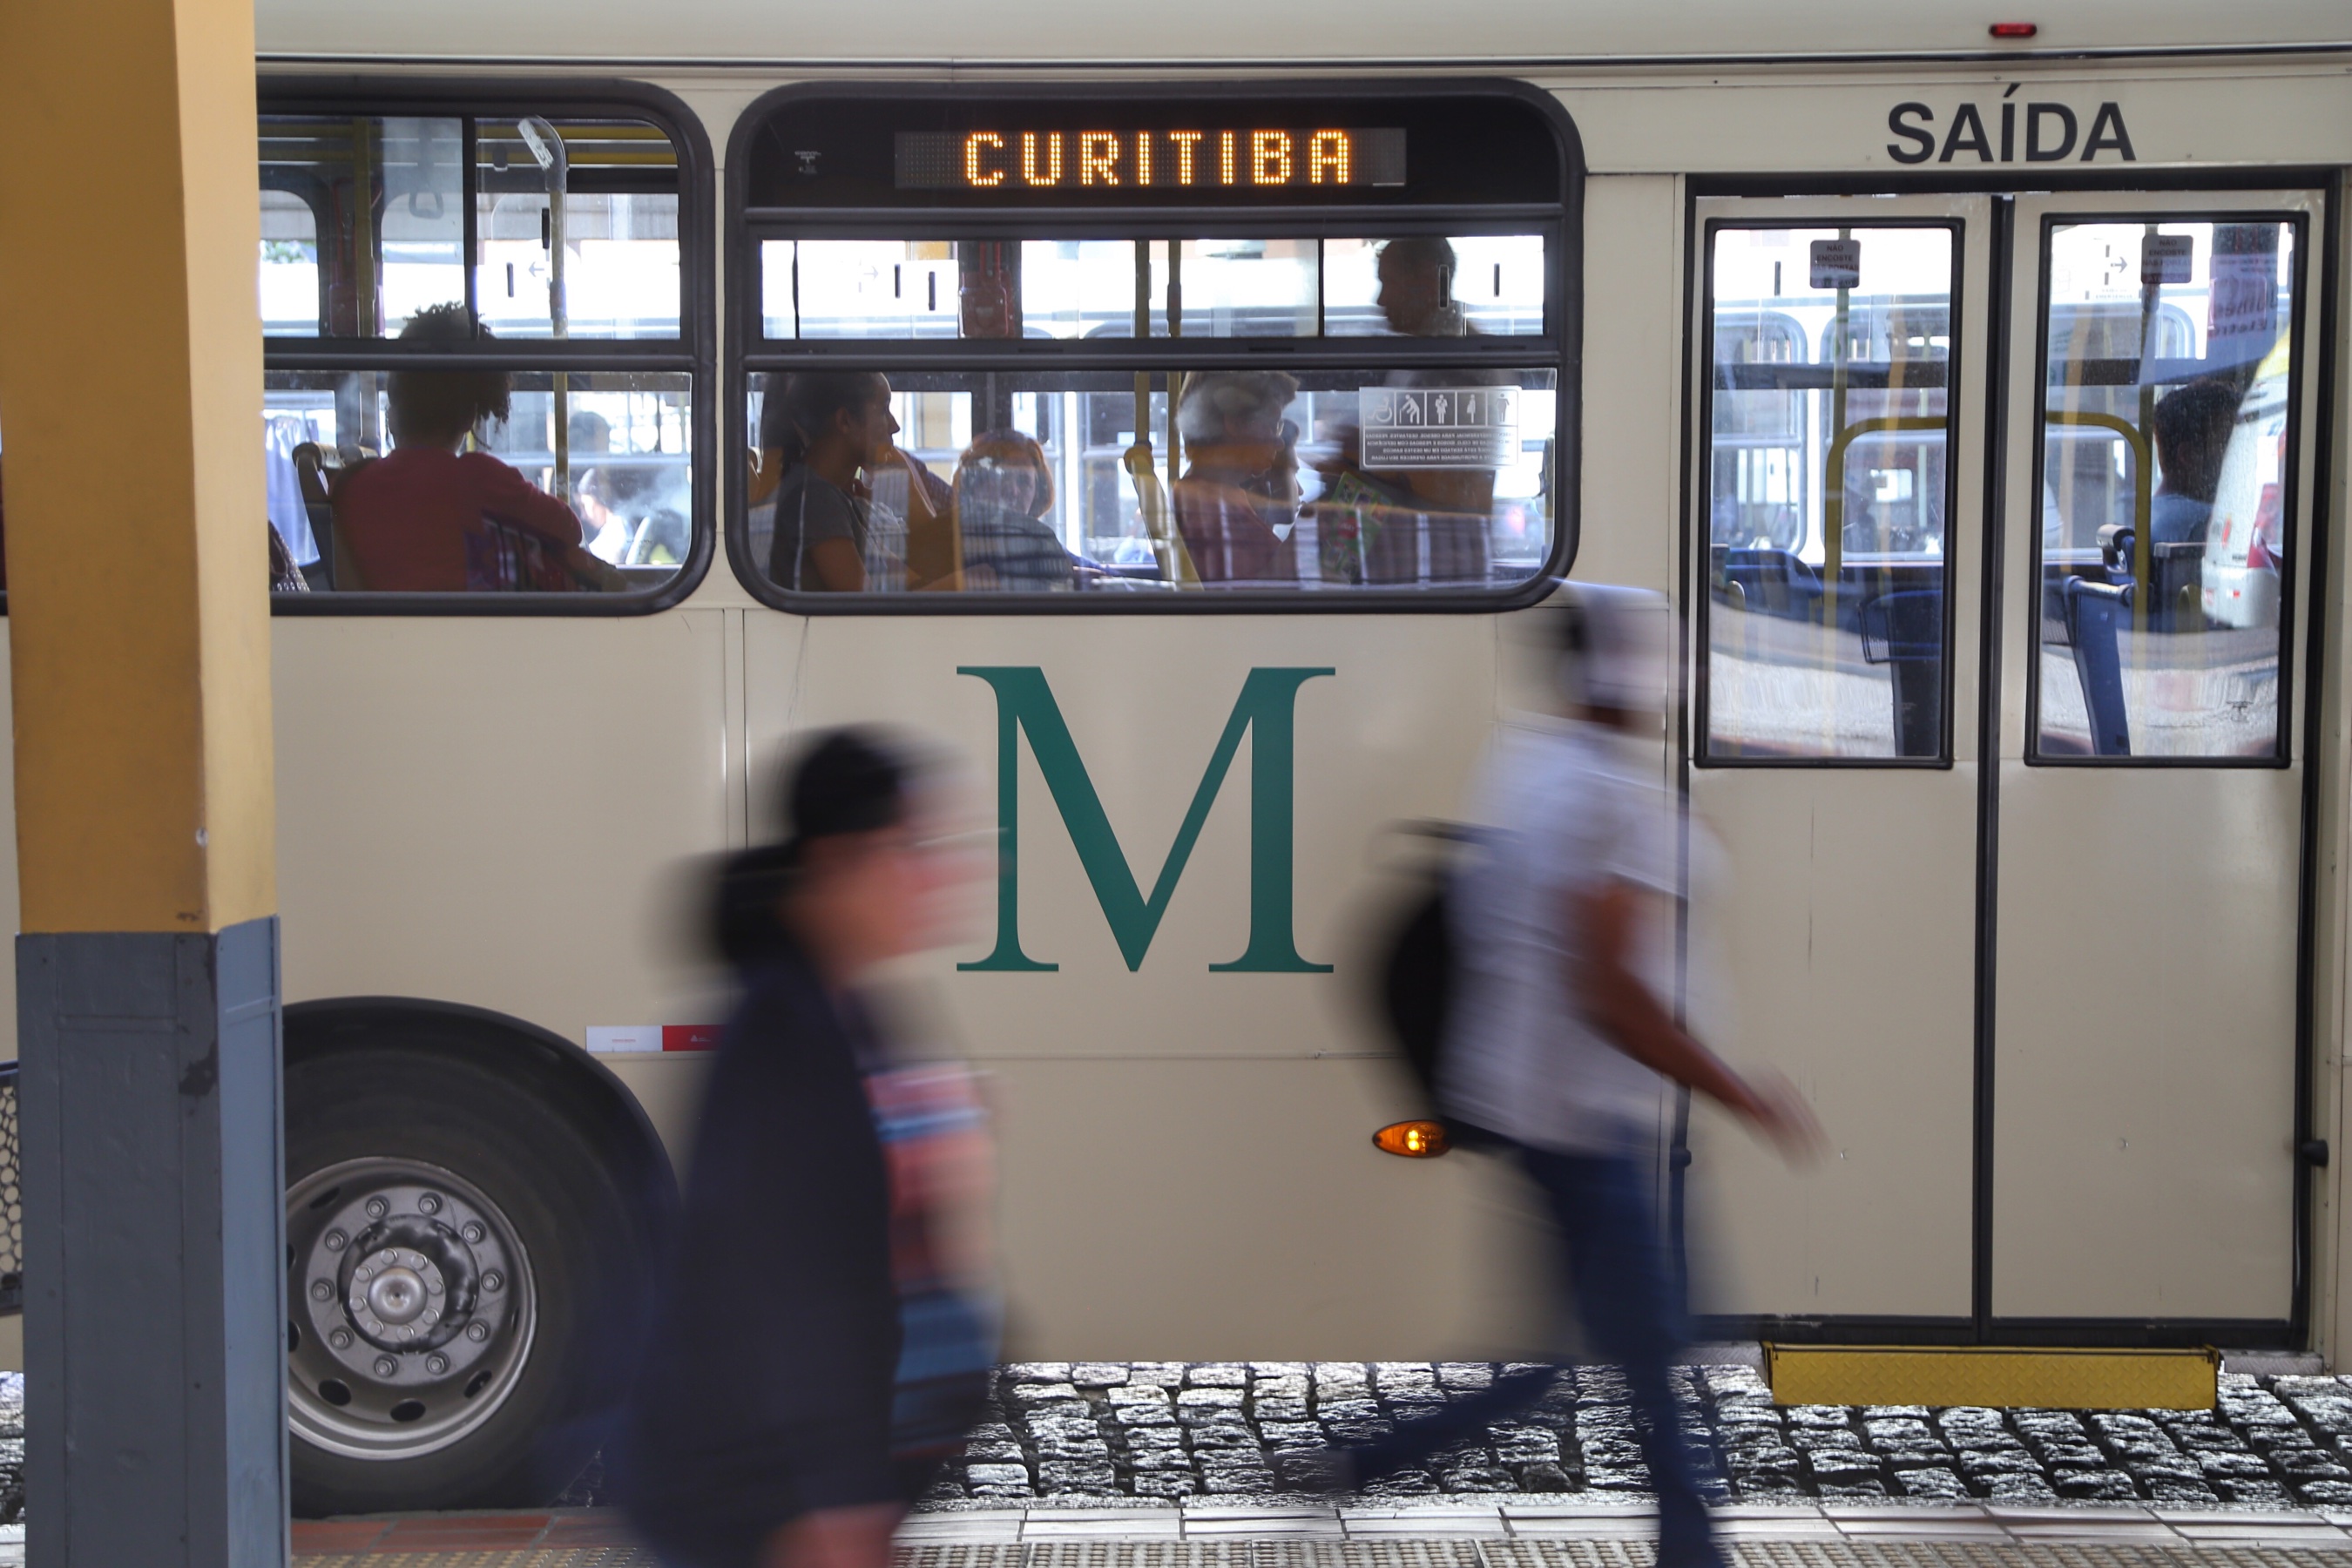 Proibição pela SPTrans de uso do nome CMTC em ônibus restaurado vira motivo  de piada em maior exposição do setor da América Latina